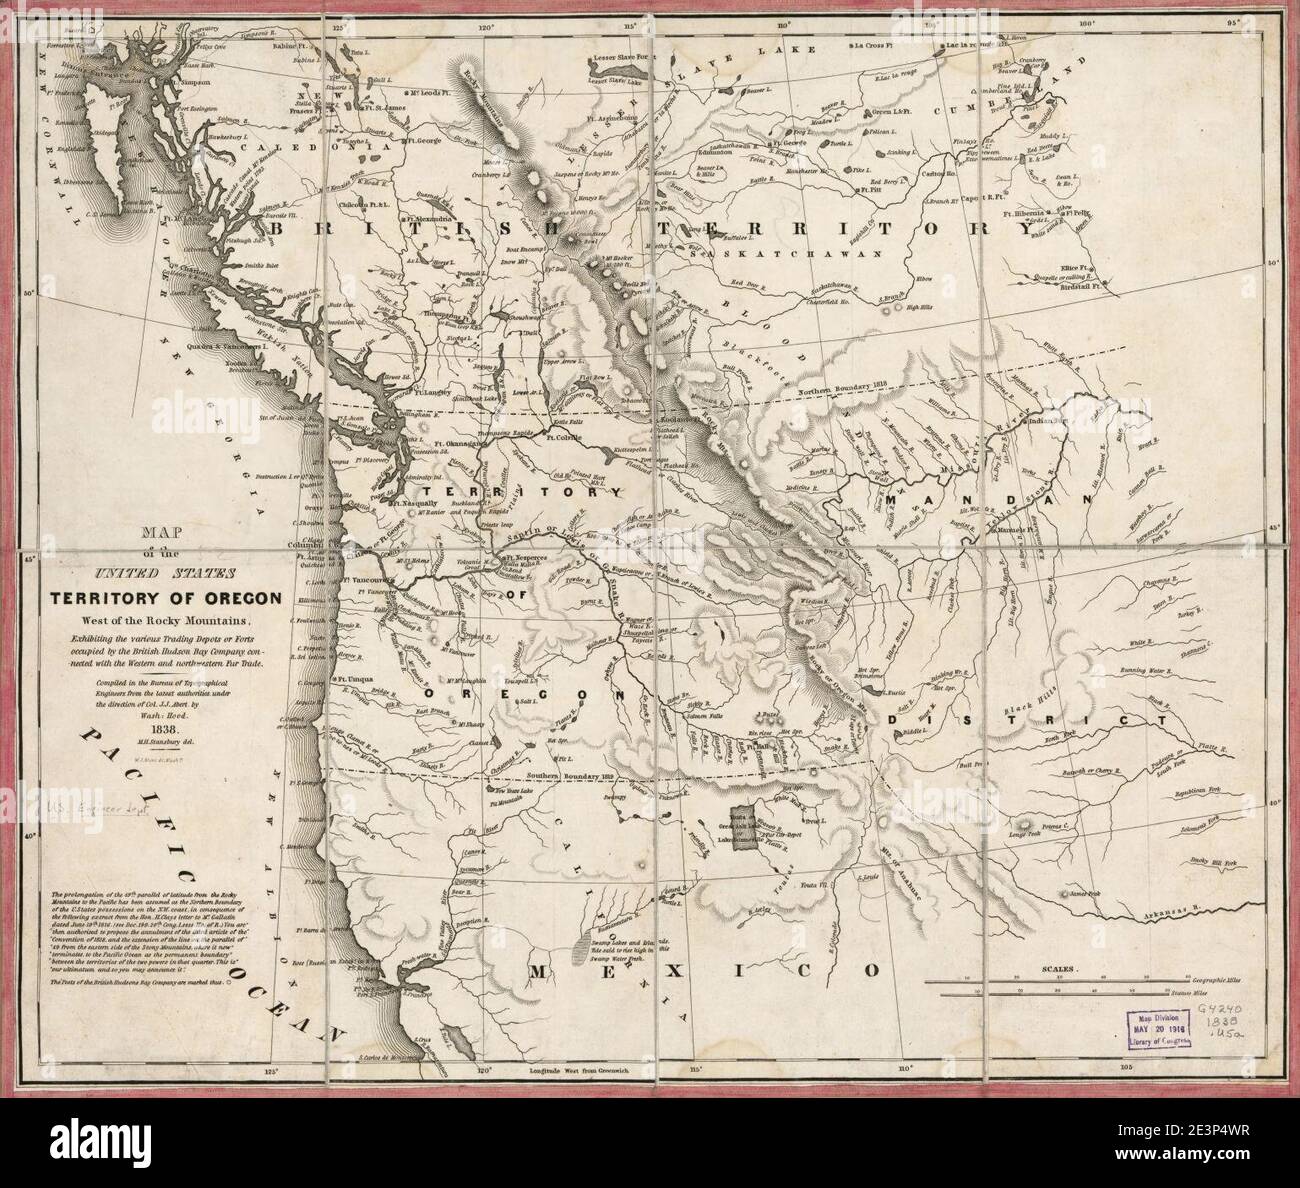 Karte der Vereinigten Staaten, Territory of Oregon, westlich der Rocky Mountains - zeigt die verschiedenen Handelsdepots oder Festungen von der britischen Hudson Bay Company besetzt, mit dem westlichen und verbunden Stockfoto